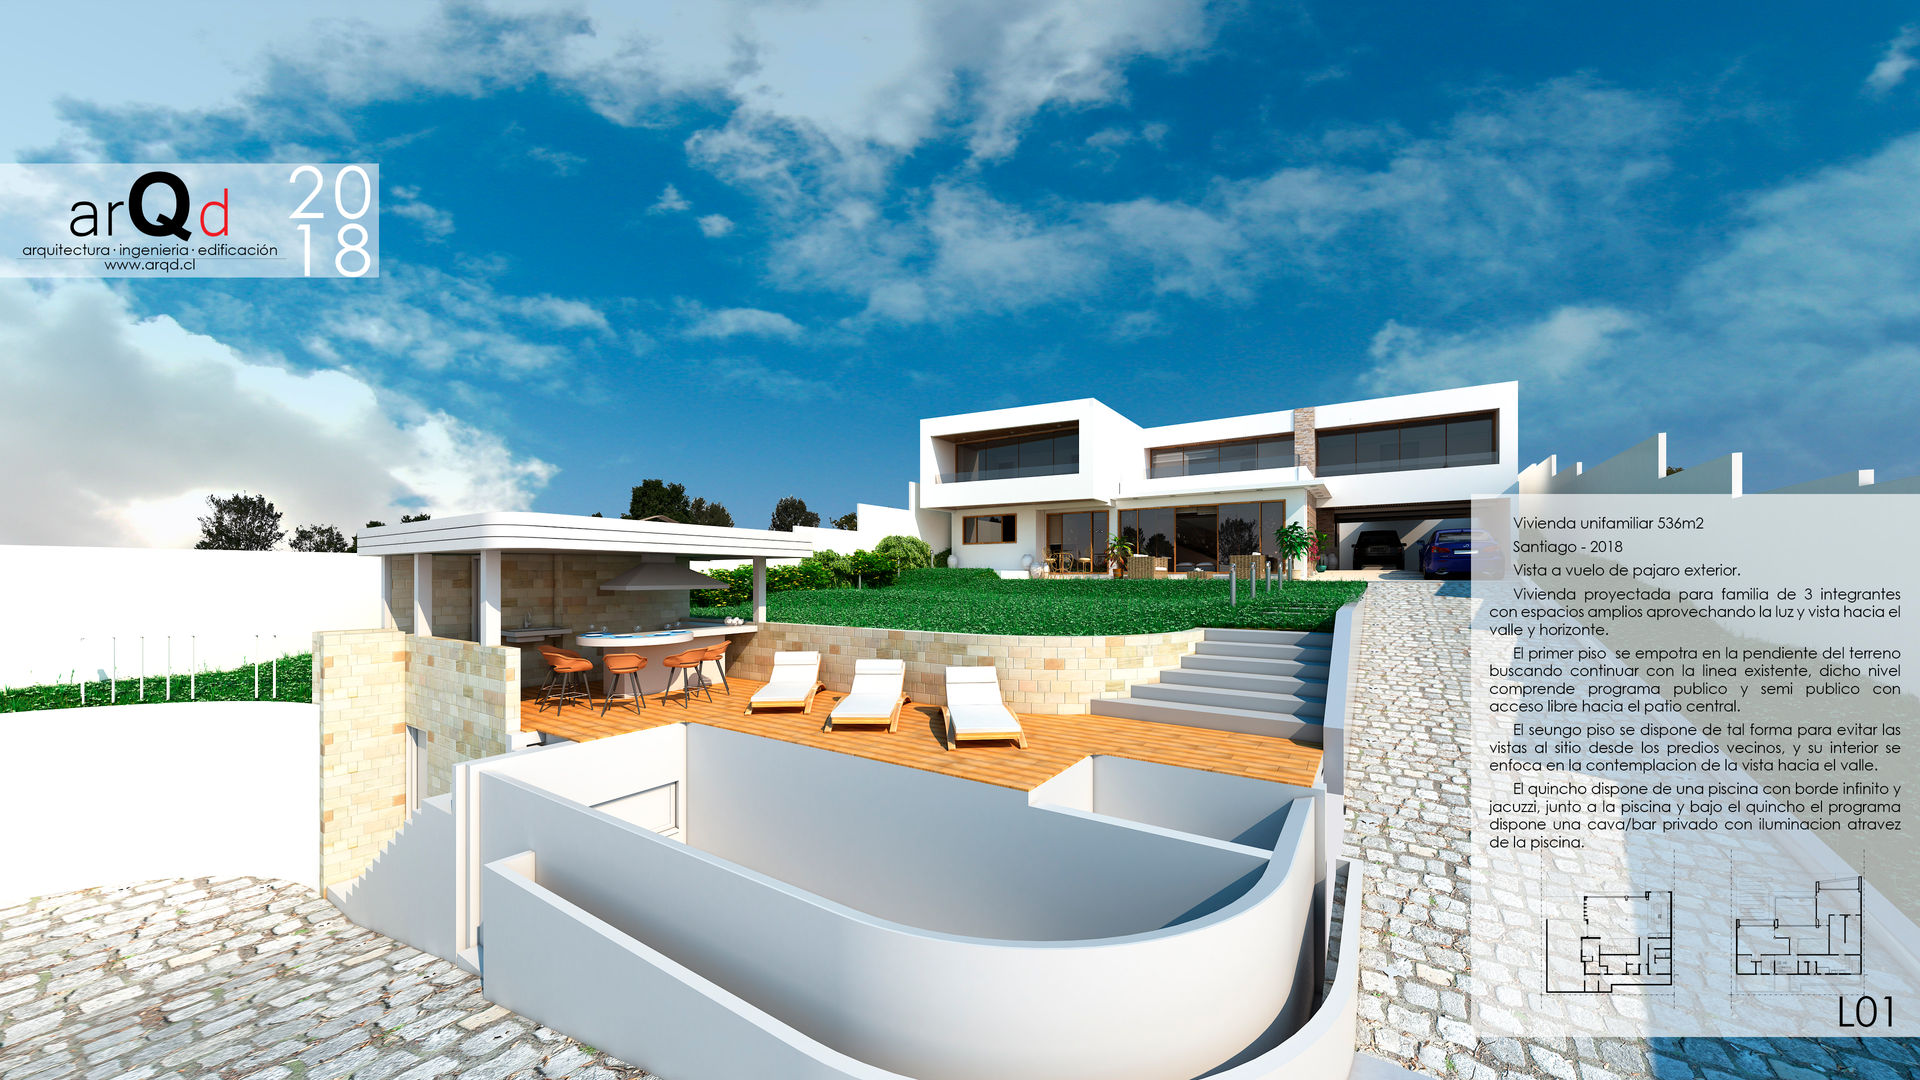 Casa Tiberiades Exterior ARQD spa Casas unifamiliares Concreto reforzado casa,piscina,quincho,mediterranea